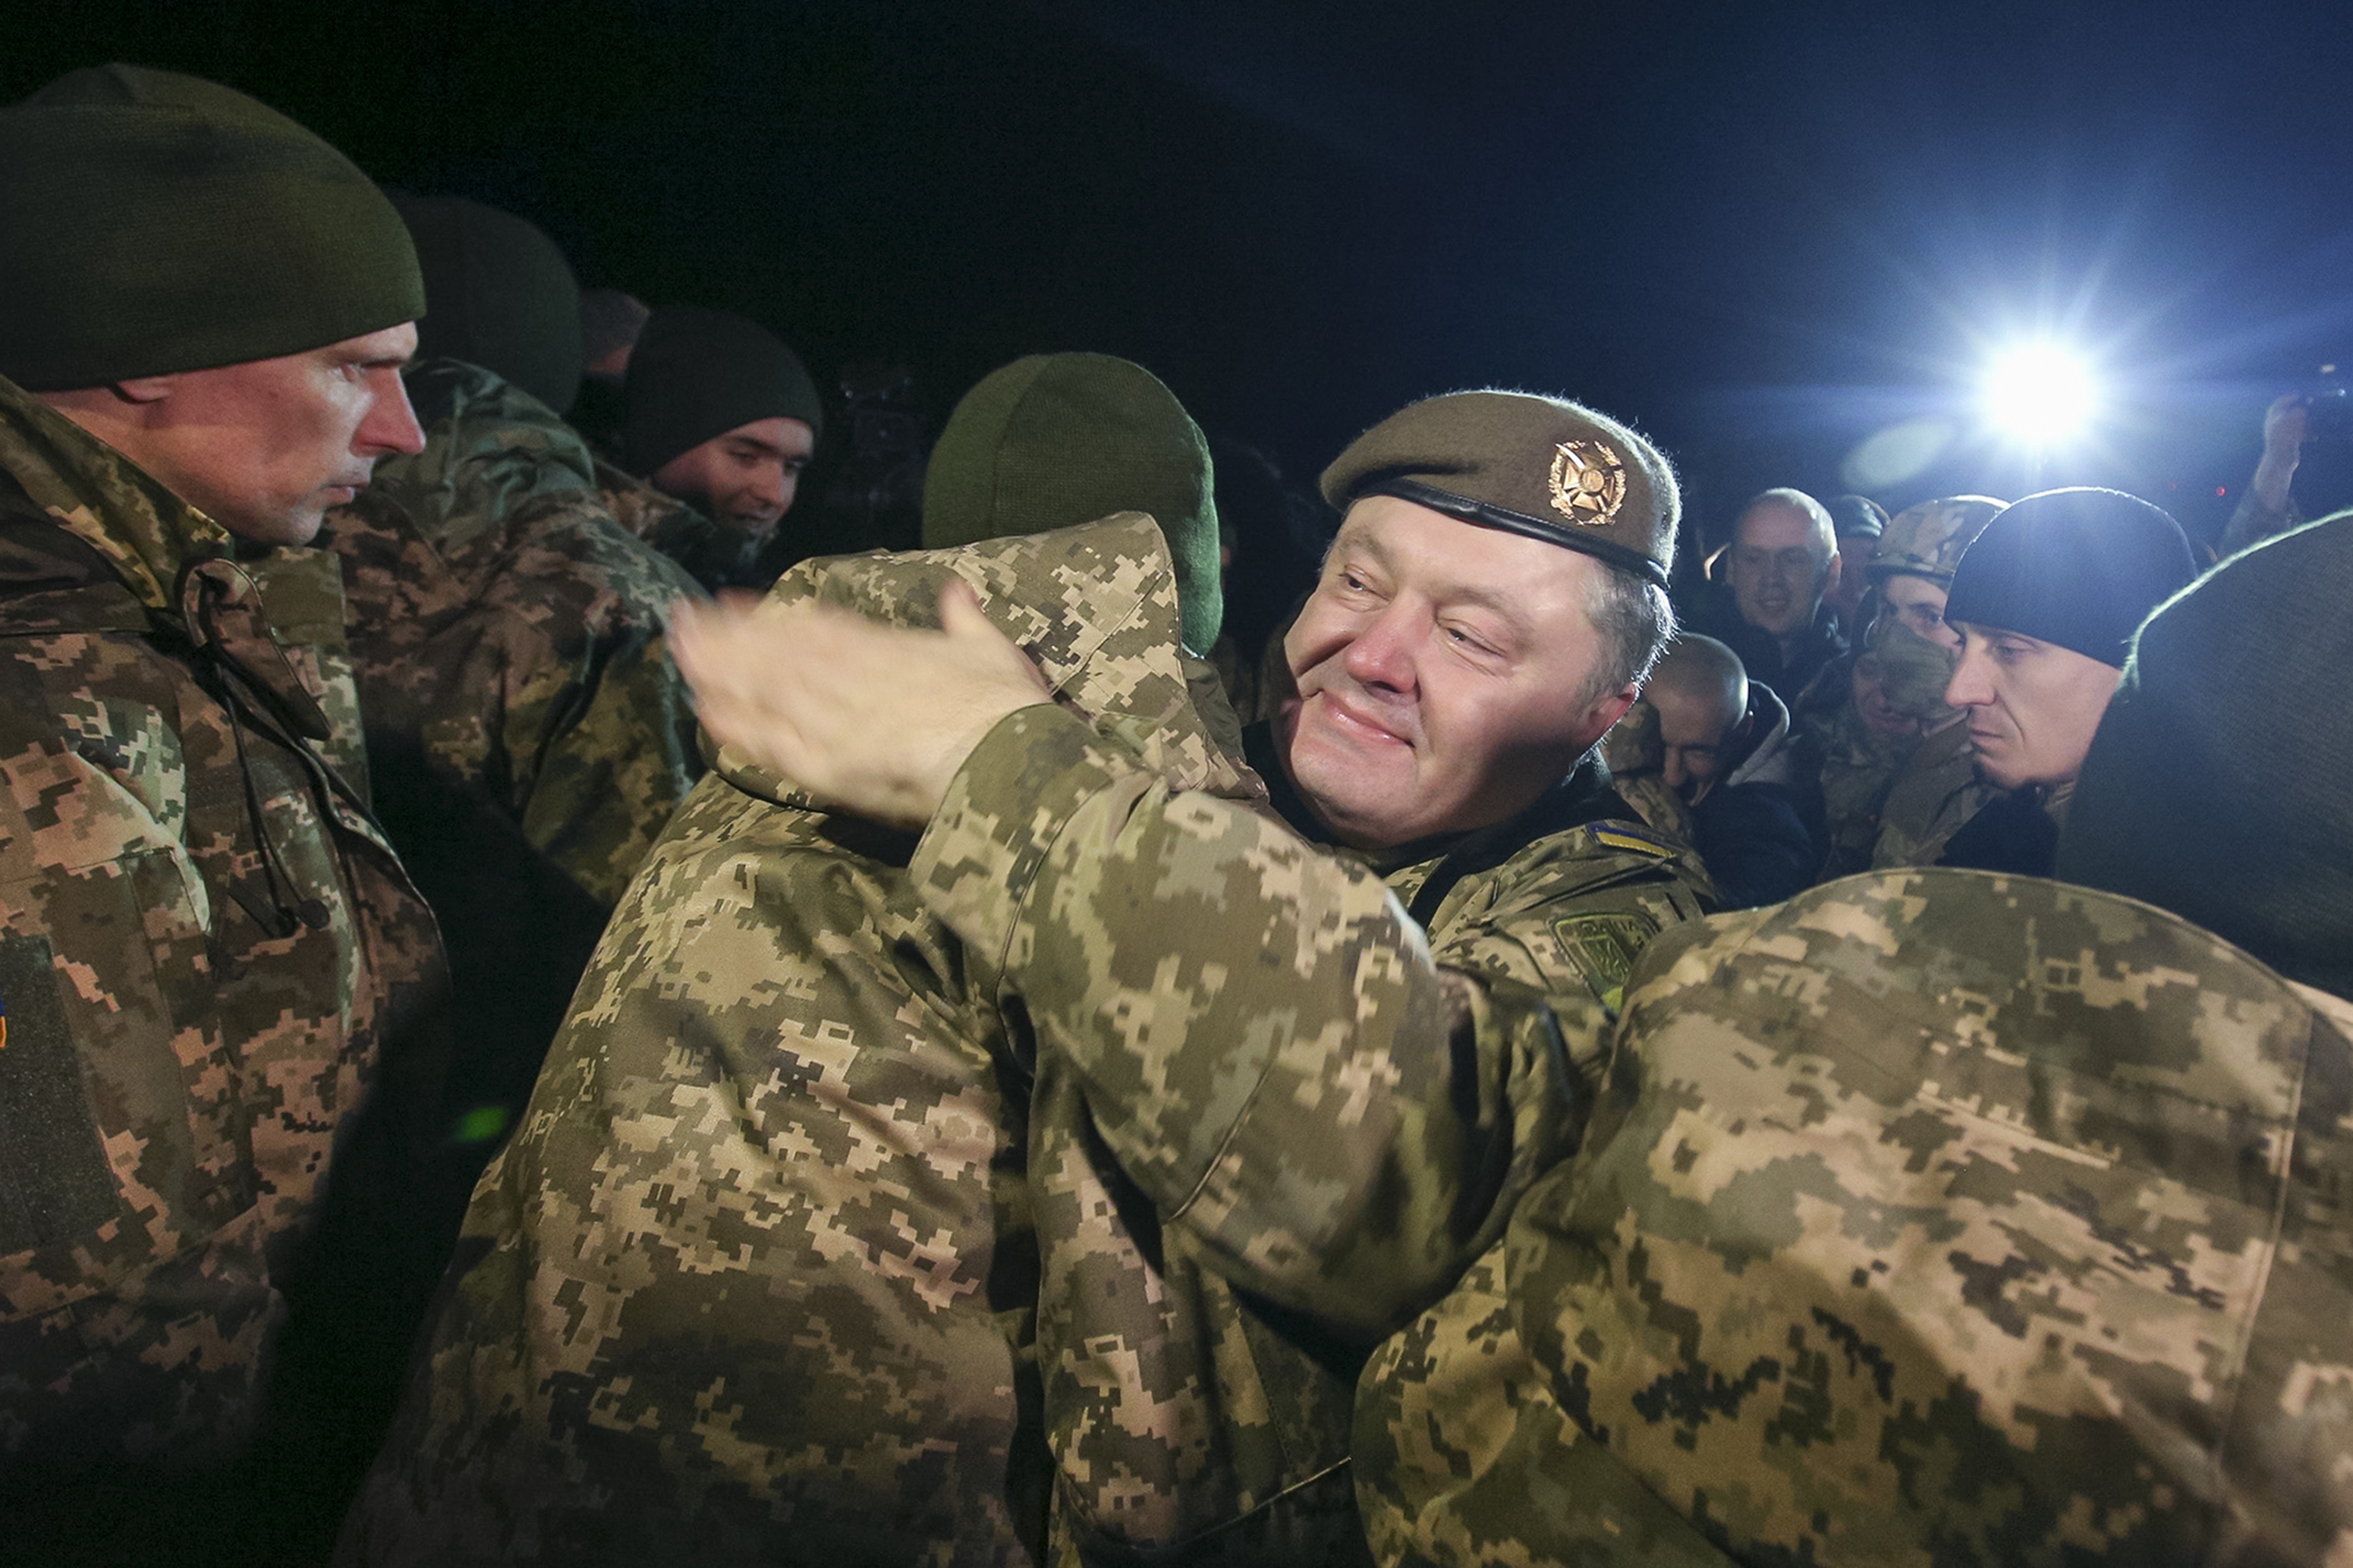 Размяна на пленници между украинските власти и проруските сепаратисти в Донбас